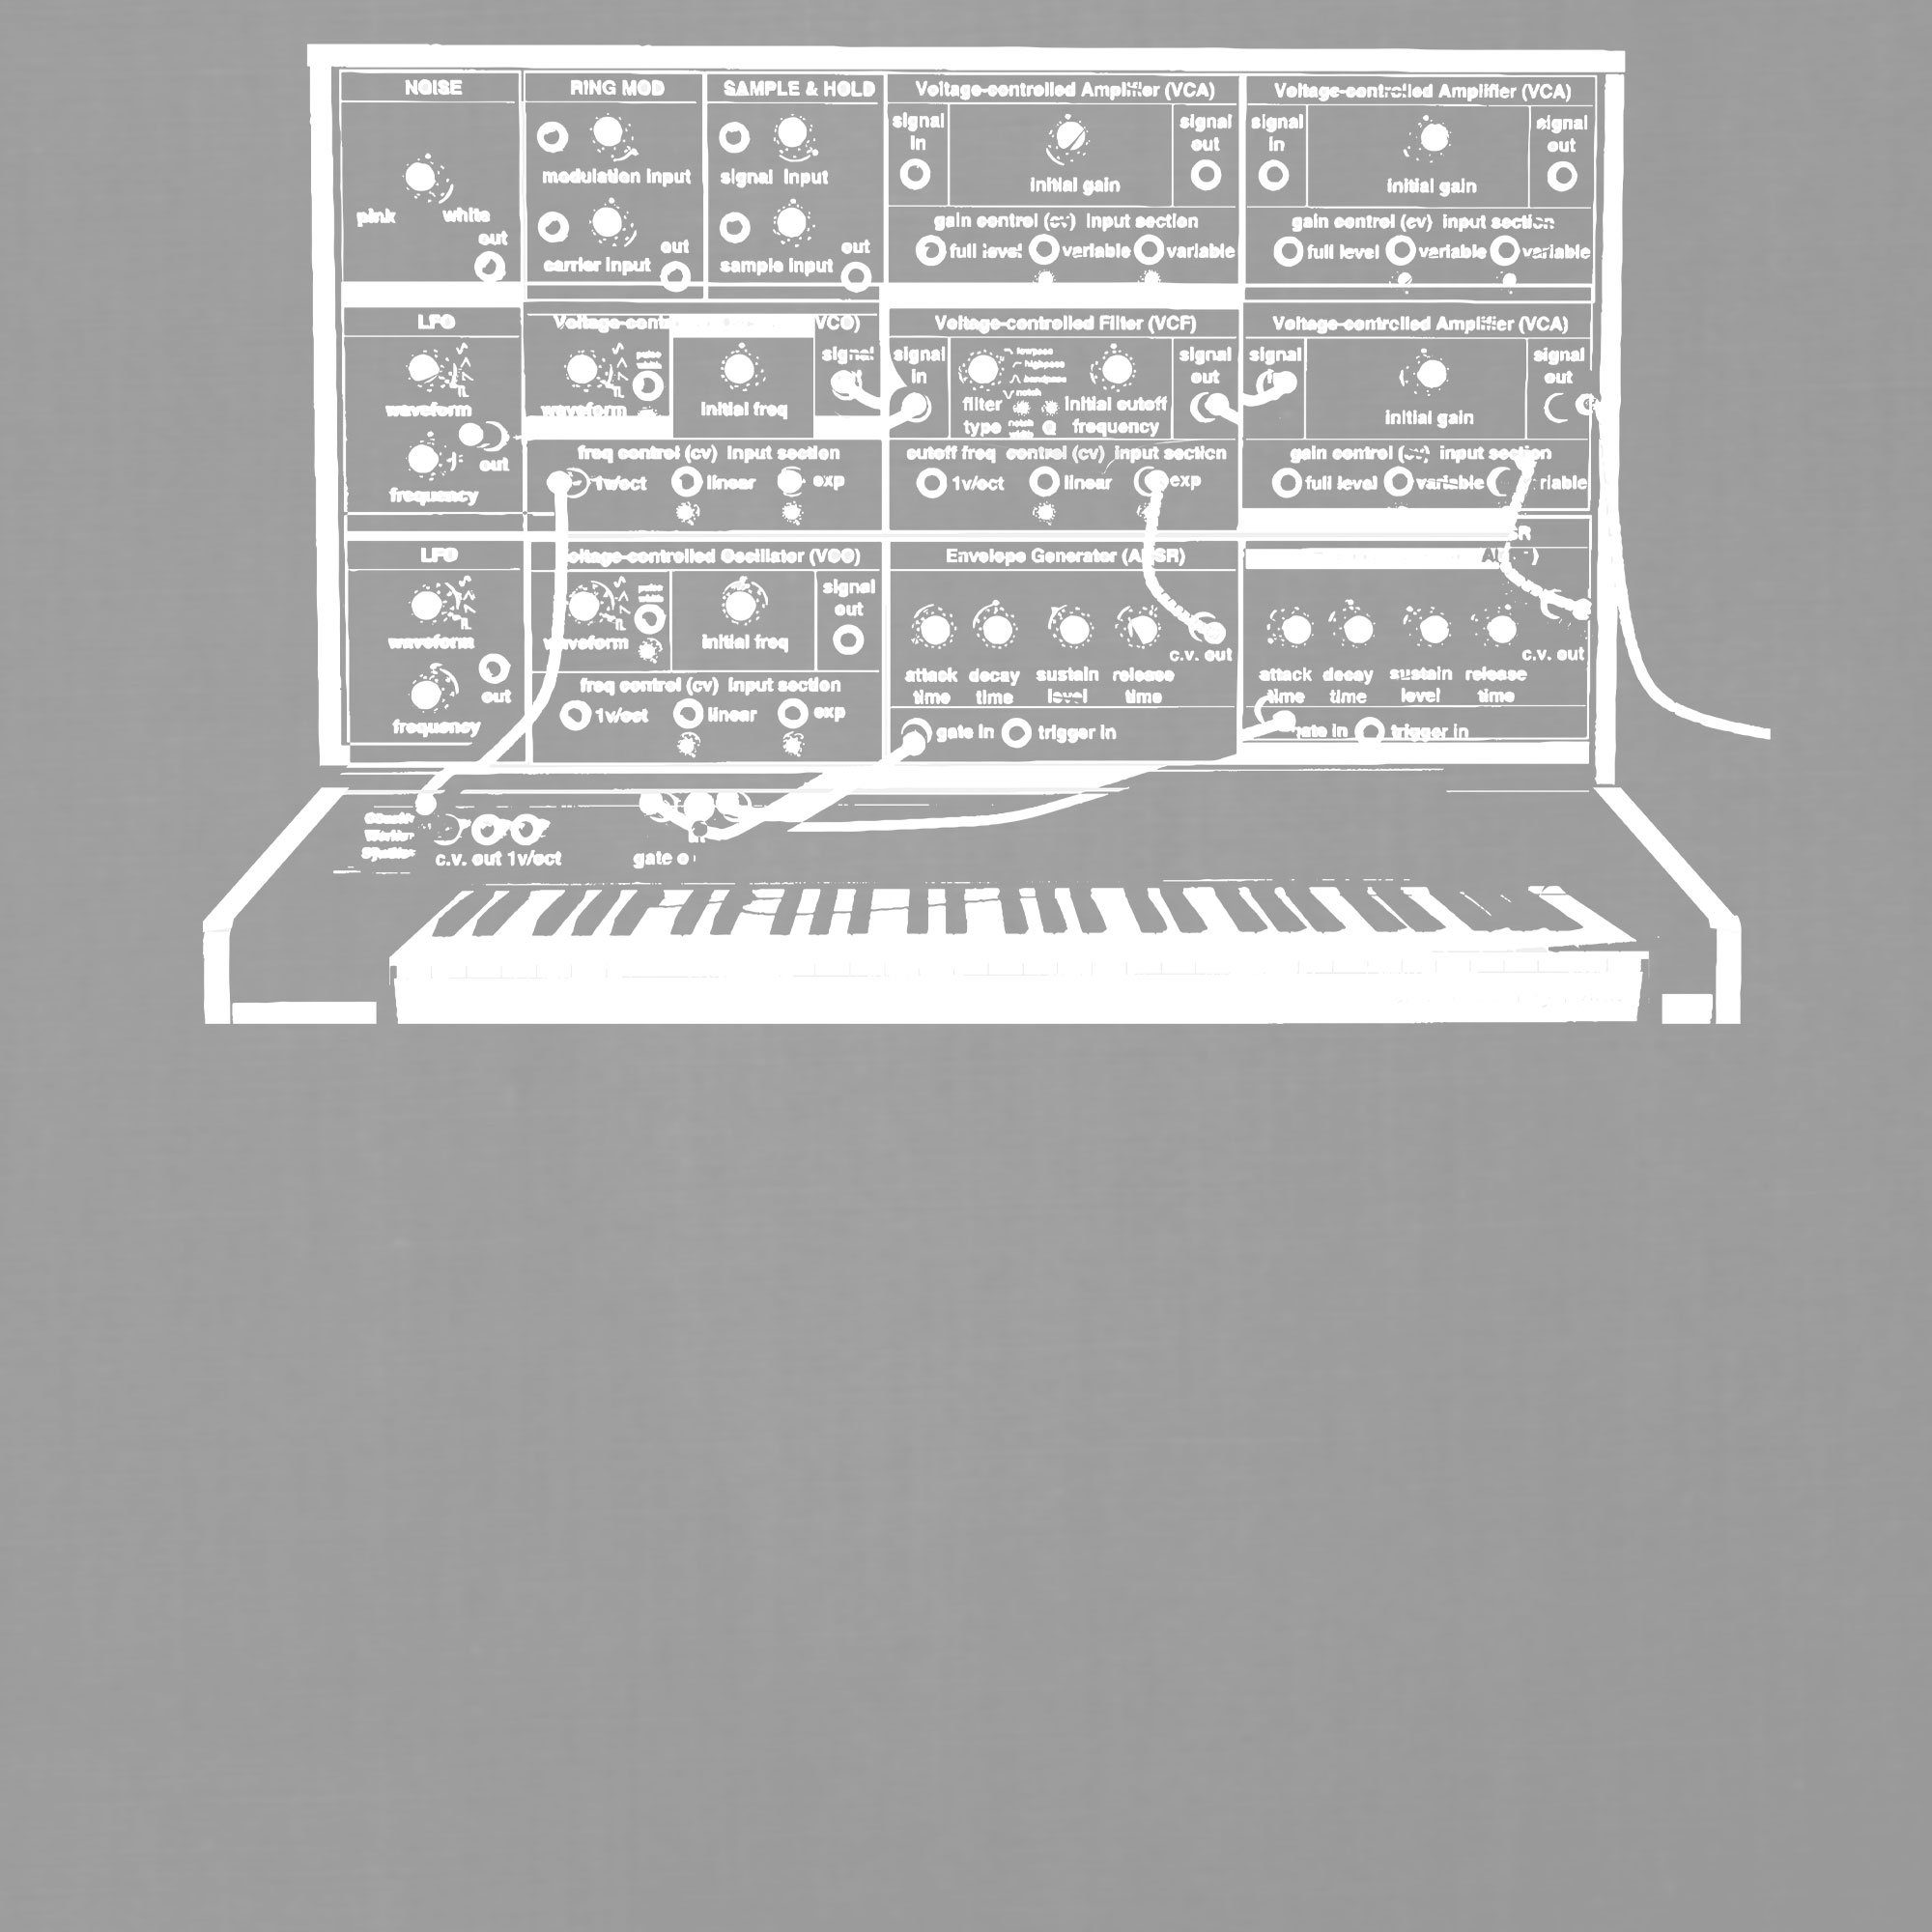 Kurzarmshirt Formatee Grau Musiker Herren Vintage (1-tlg) - Elektronische Synthesizer T-Shirt Quattro Heather